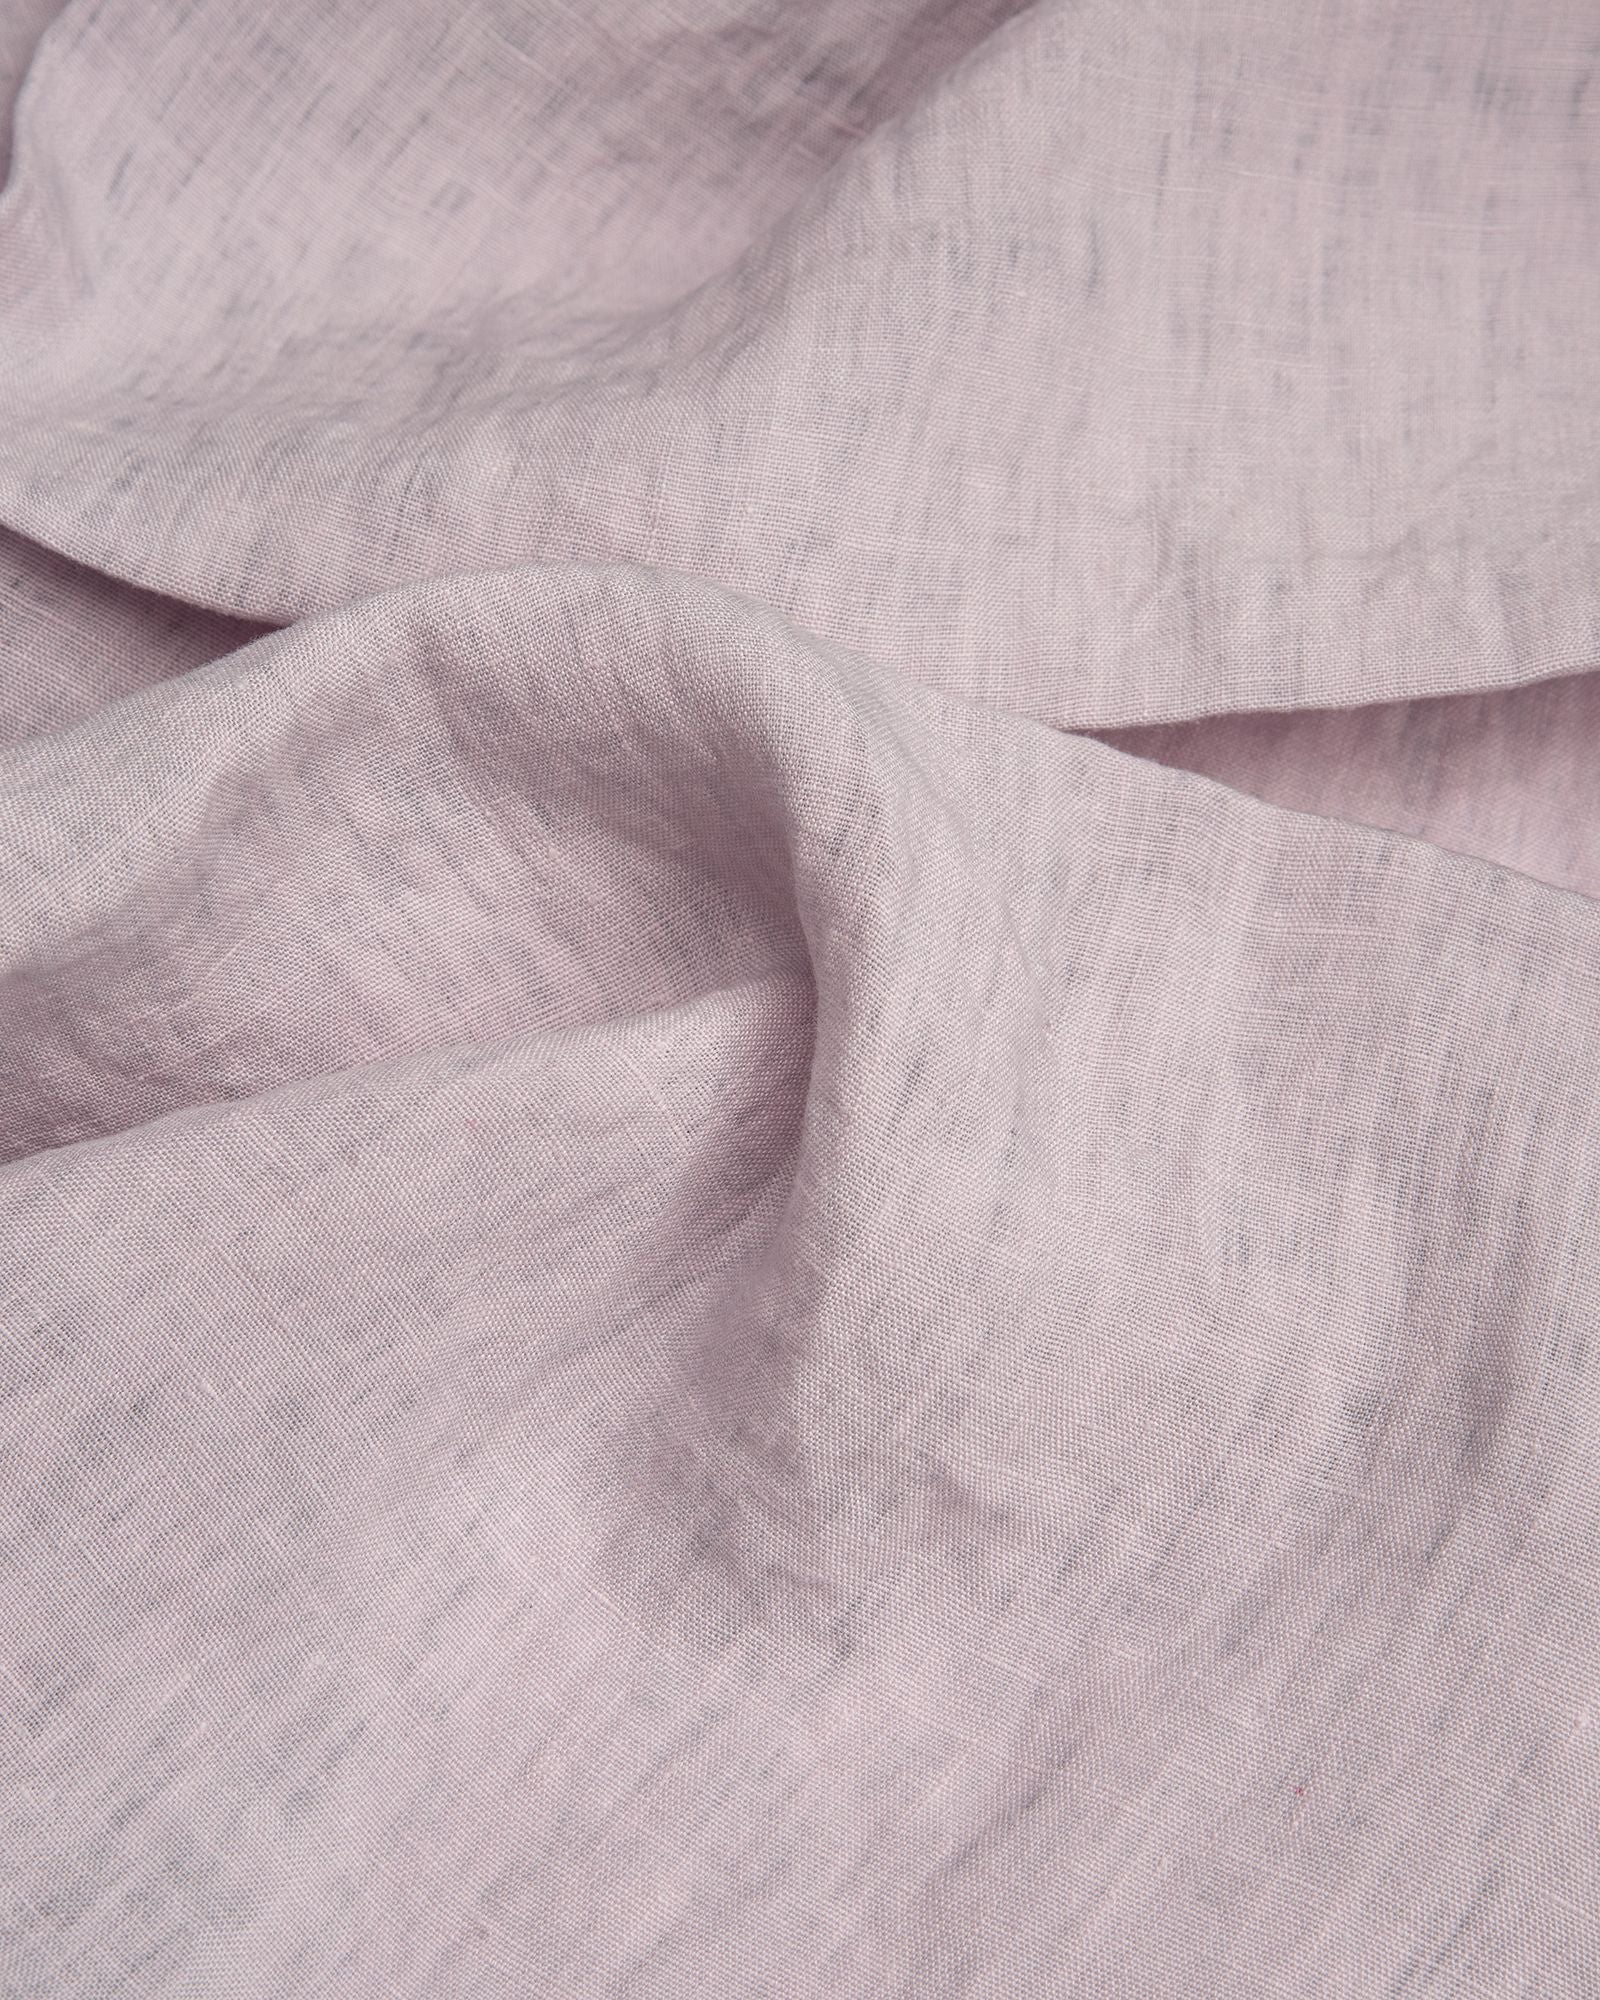 Größe: 41x 41 cm Farbe: lavendel #farbe_lavendel